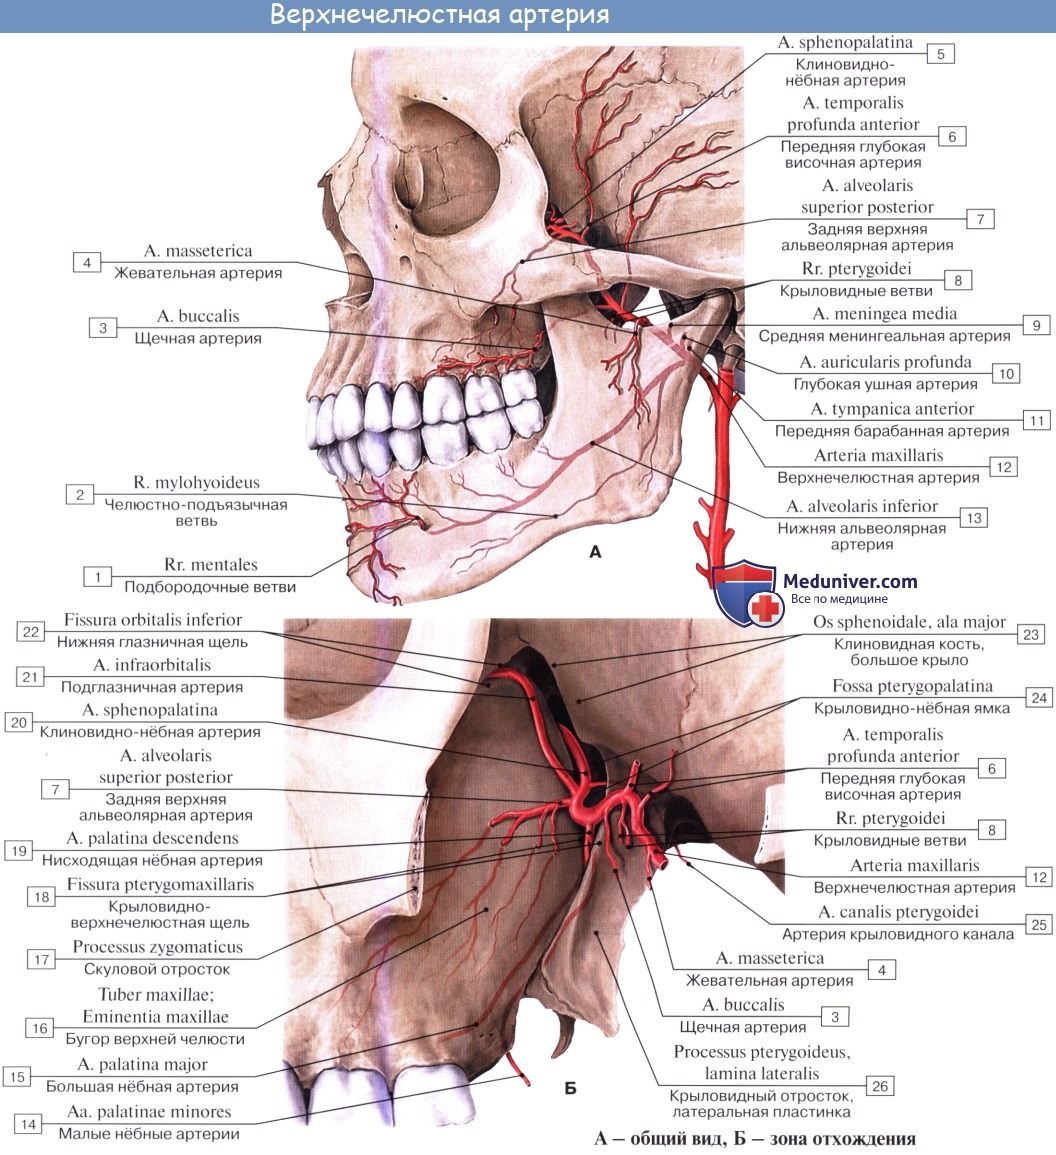 Анатомия: Ветви верхнечелюстной артерии. Отрезки верхнечелюстной артерии (a. maxillaris)